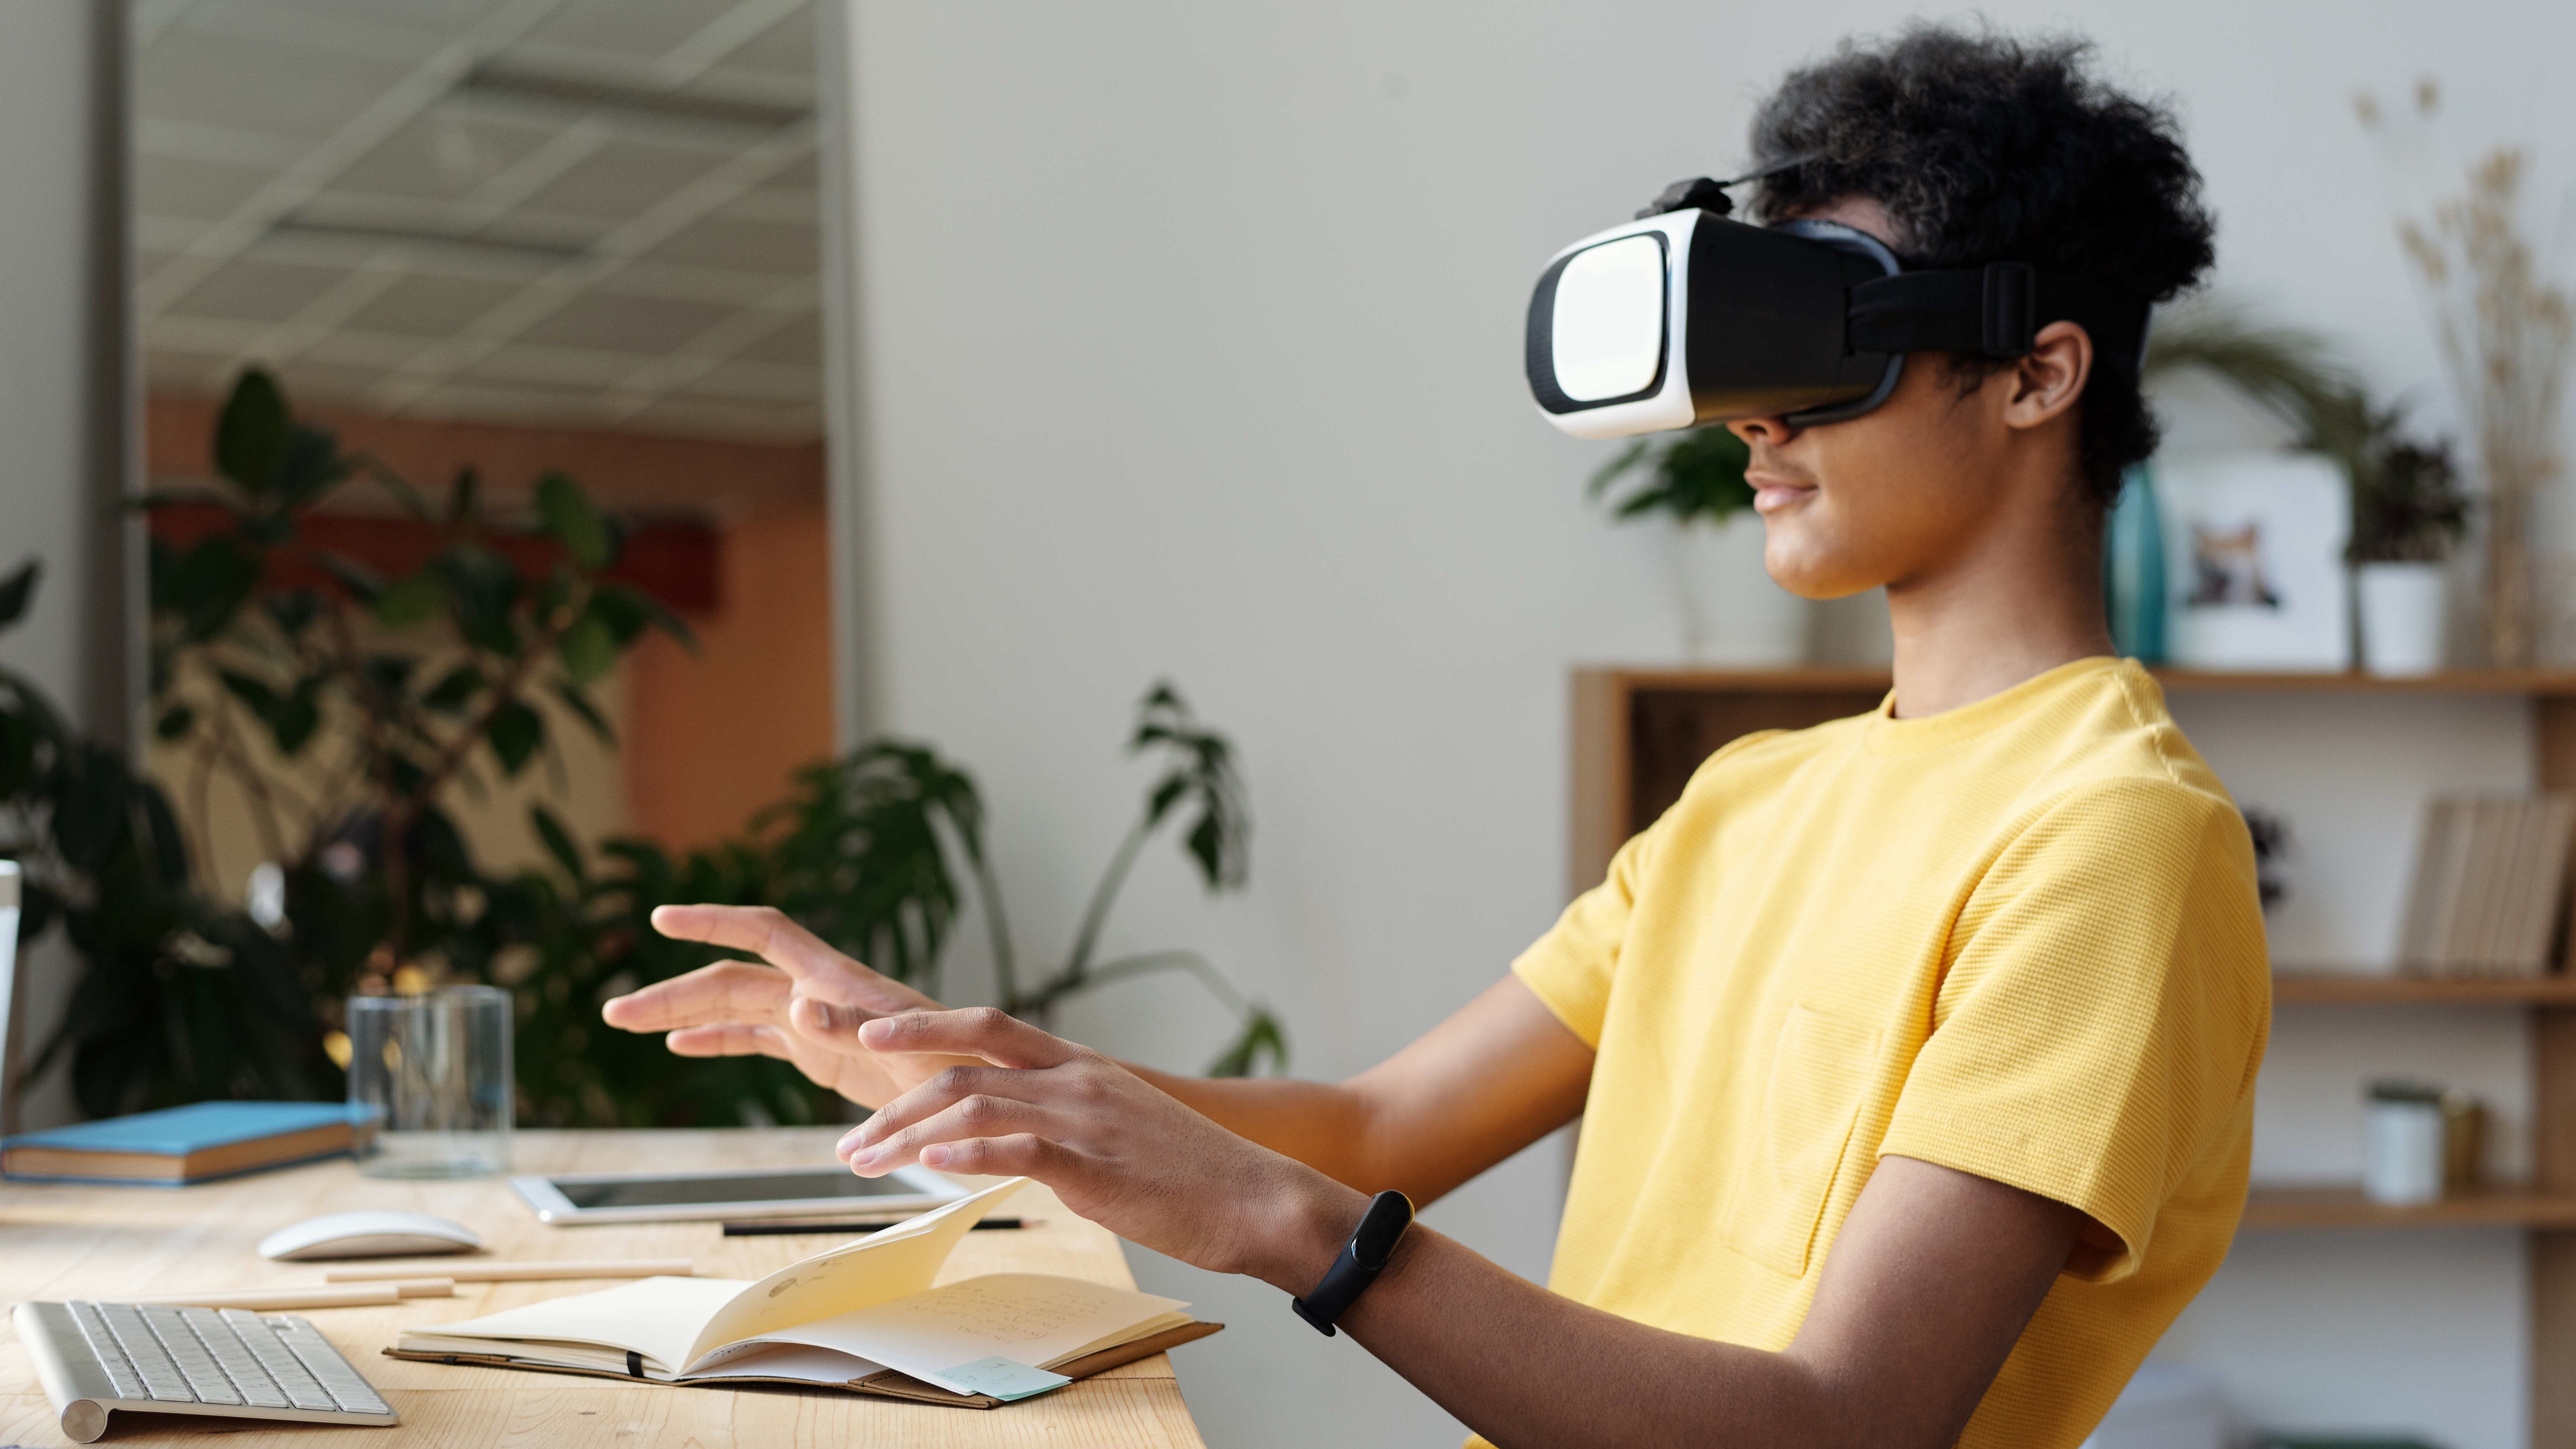 mensch mit VR-Brille am Schreibtisch